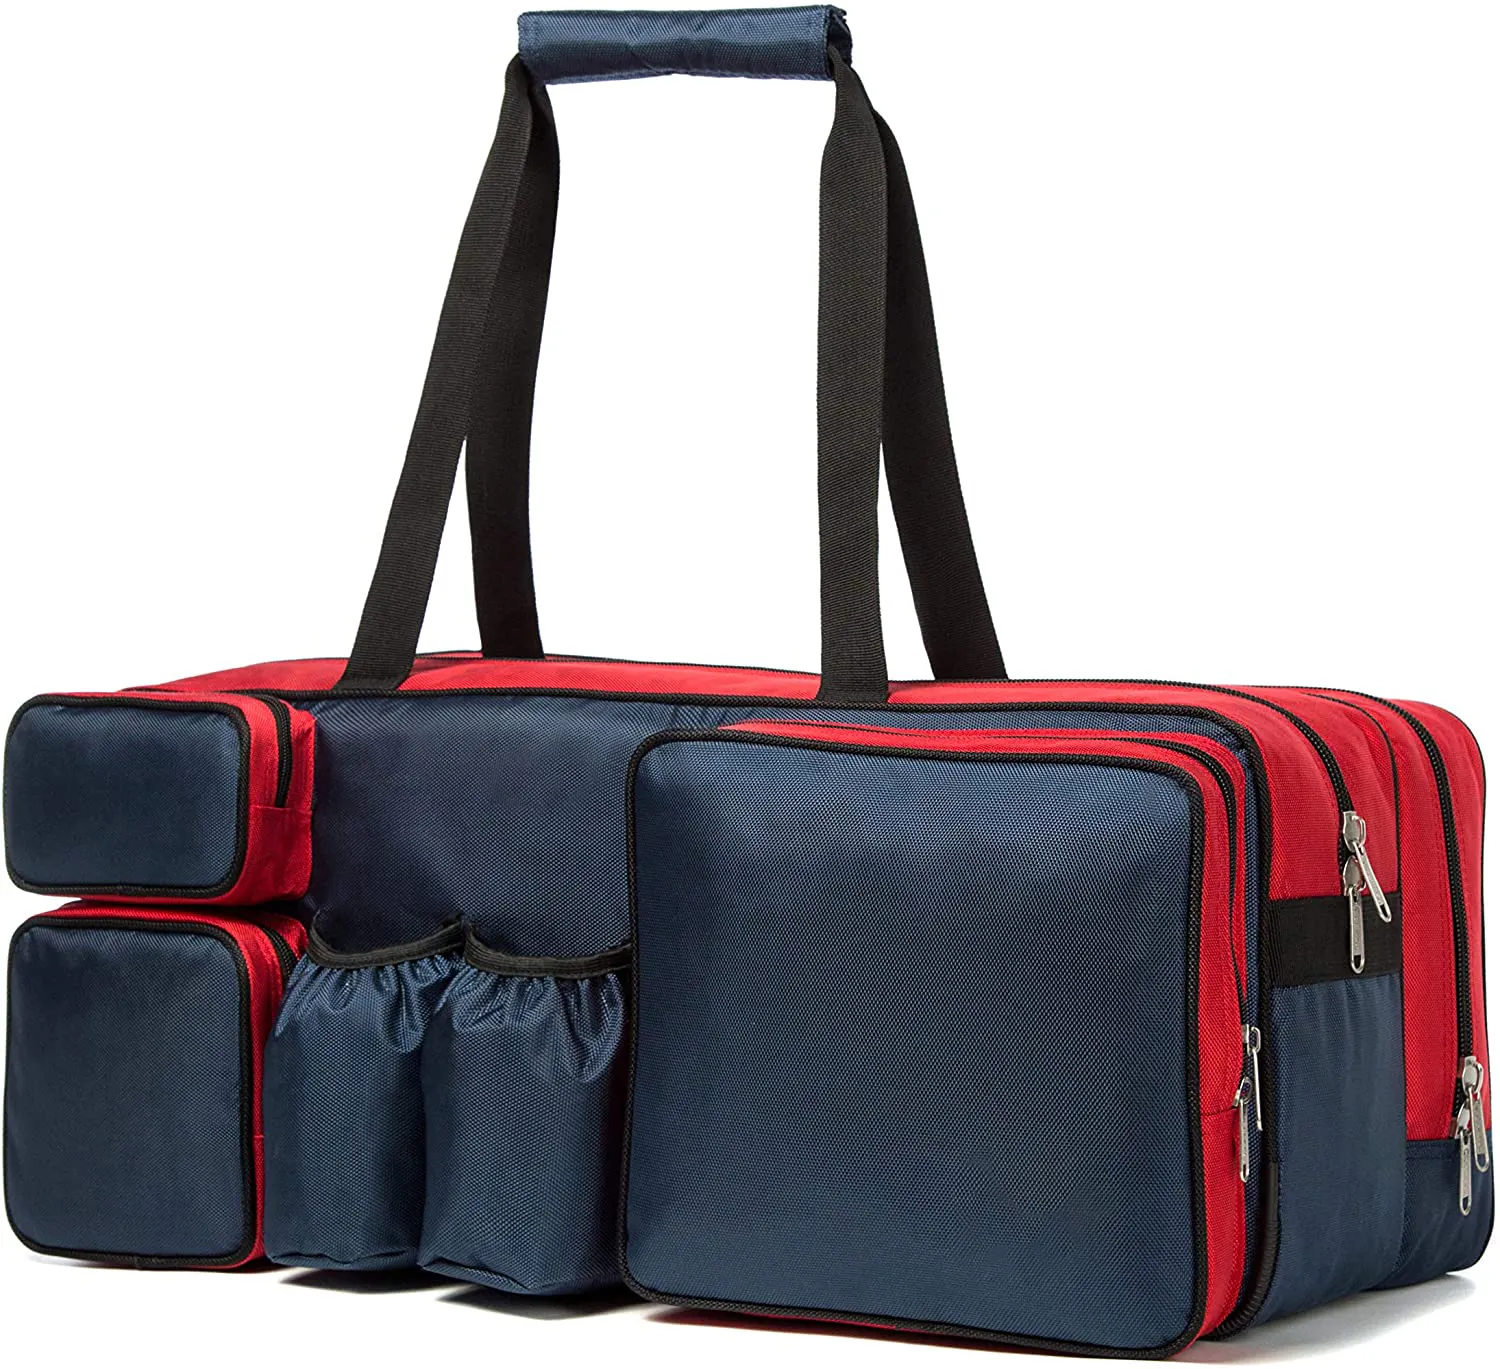 حقائب تنس كبيرة تحمل حقيبة مضرب تنس لحمل النشاط في الهواء الطلق حقائب مضرب الرياضة